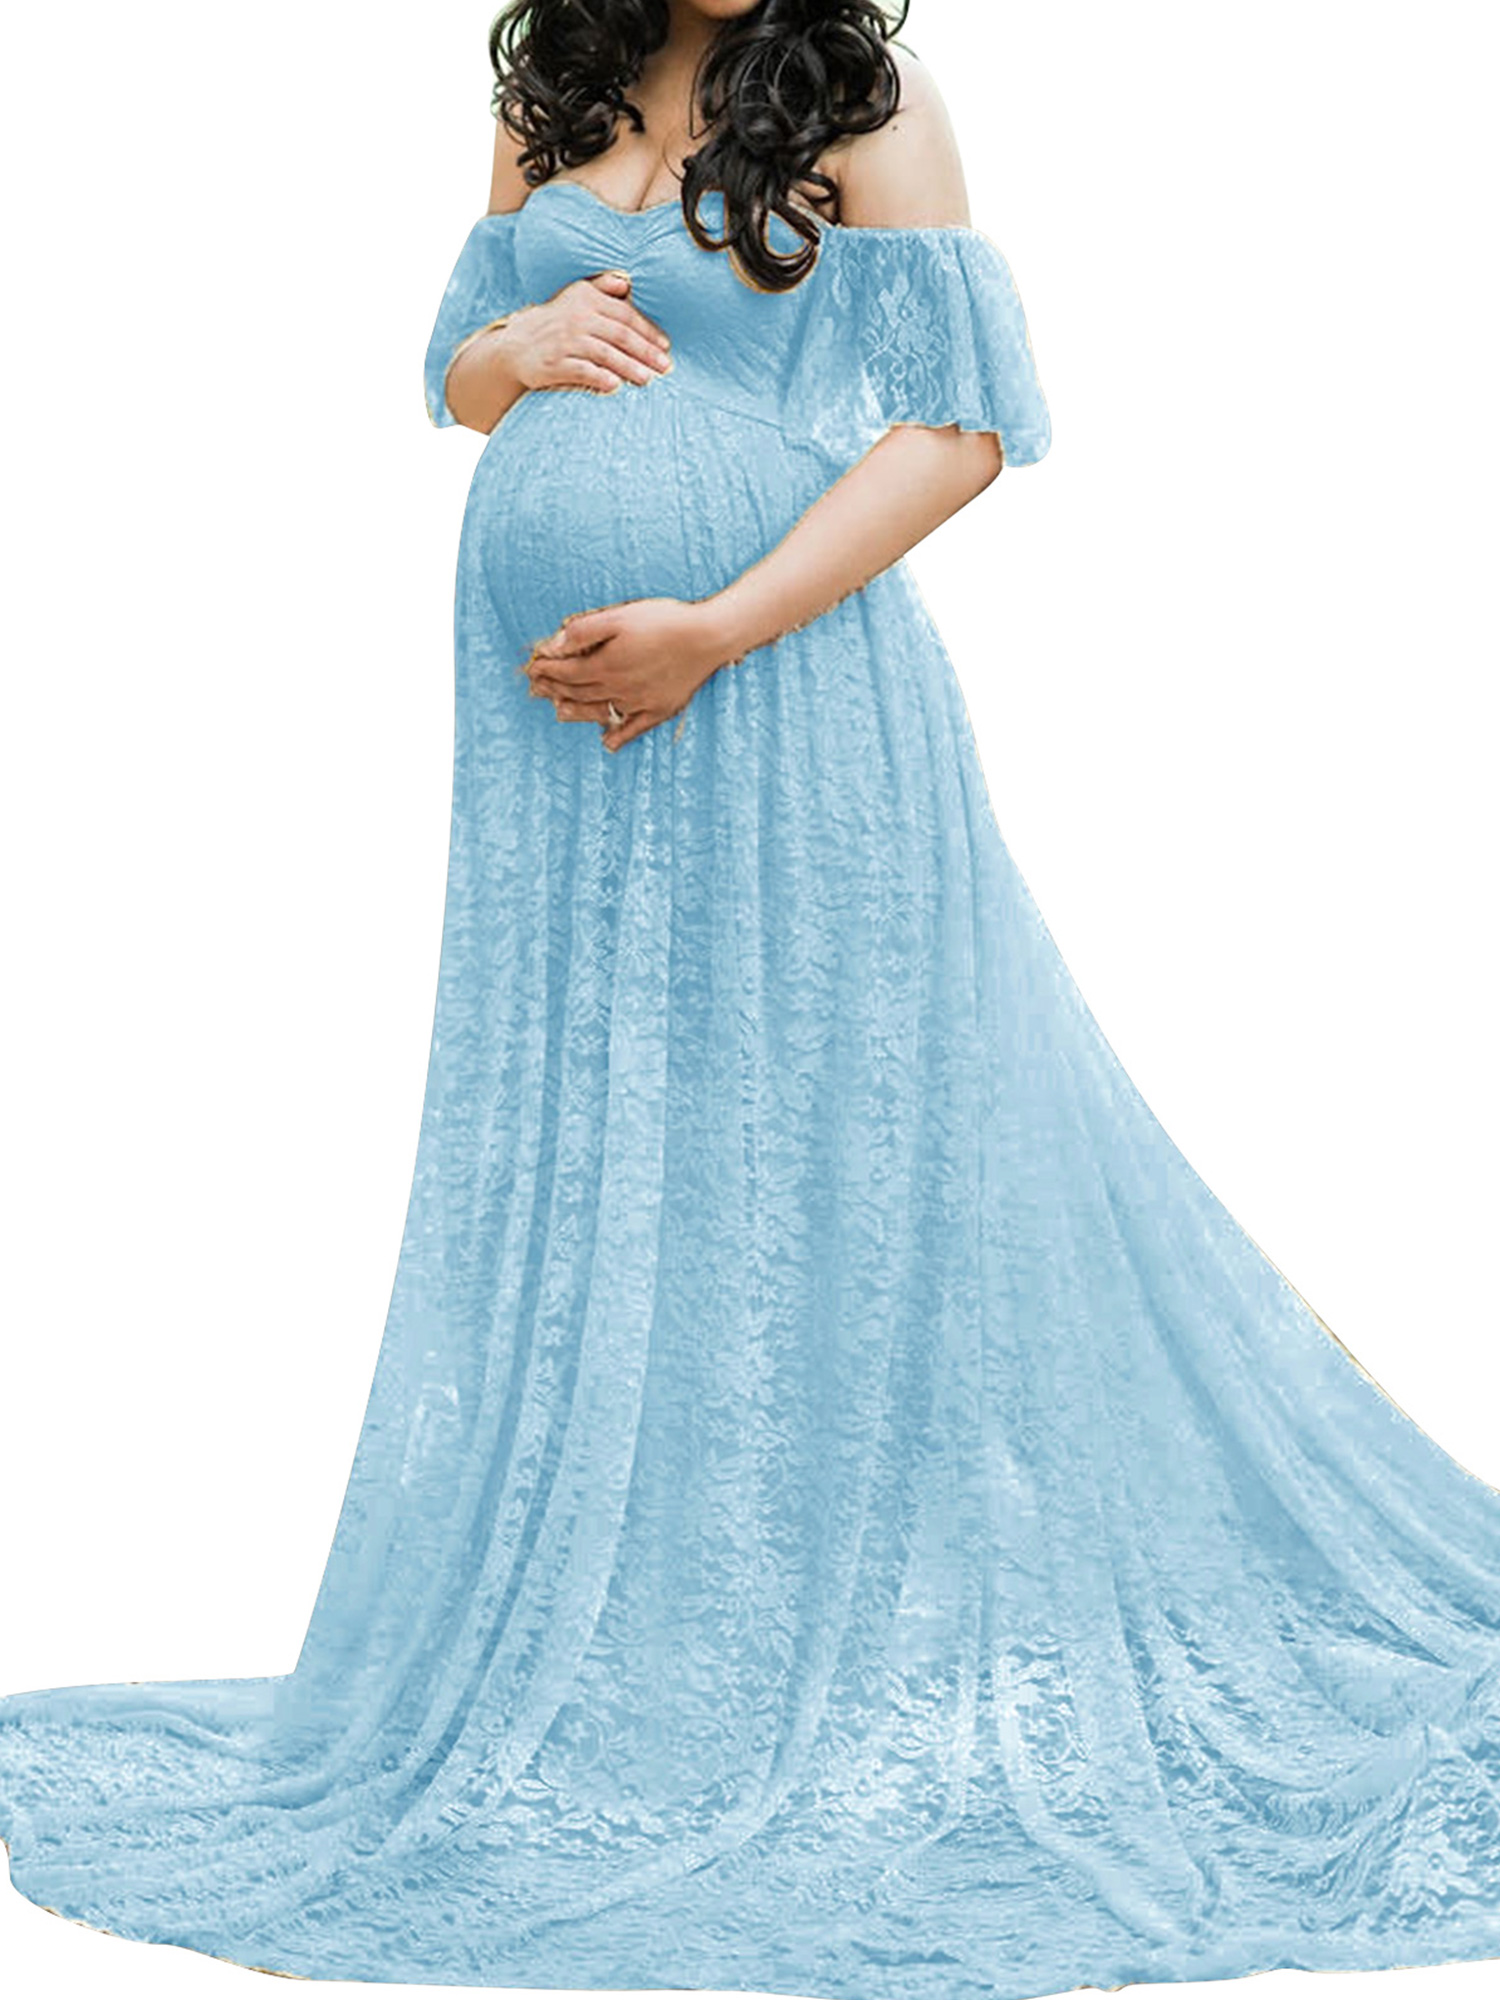 TFFR Women Lace Maternity Dress Elegant Off Shoulder Short Sleeve ...